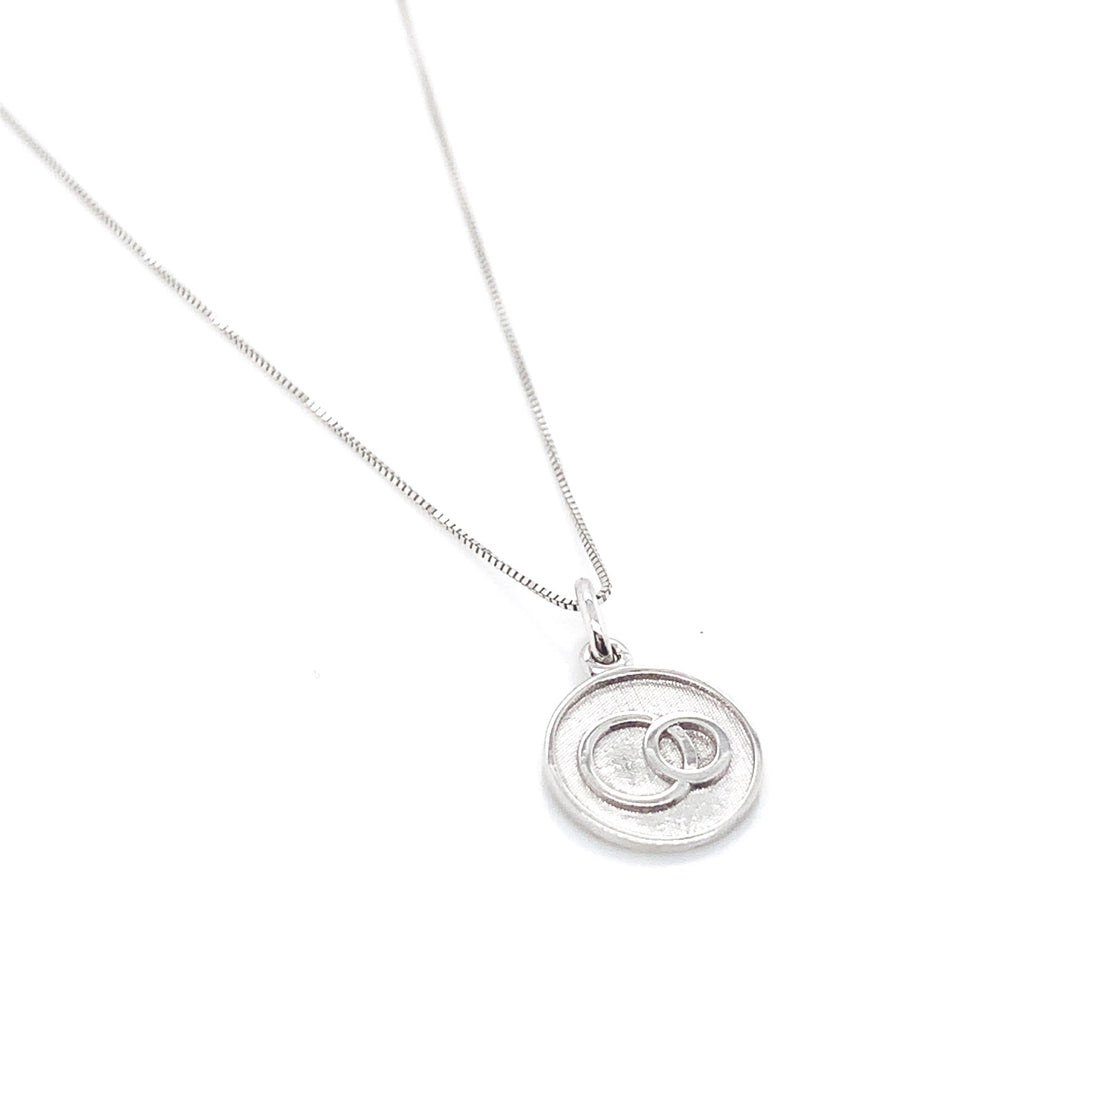 Joy Smith Foundation Sterling Silver Necklace - I Am Whole